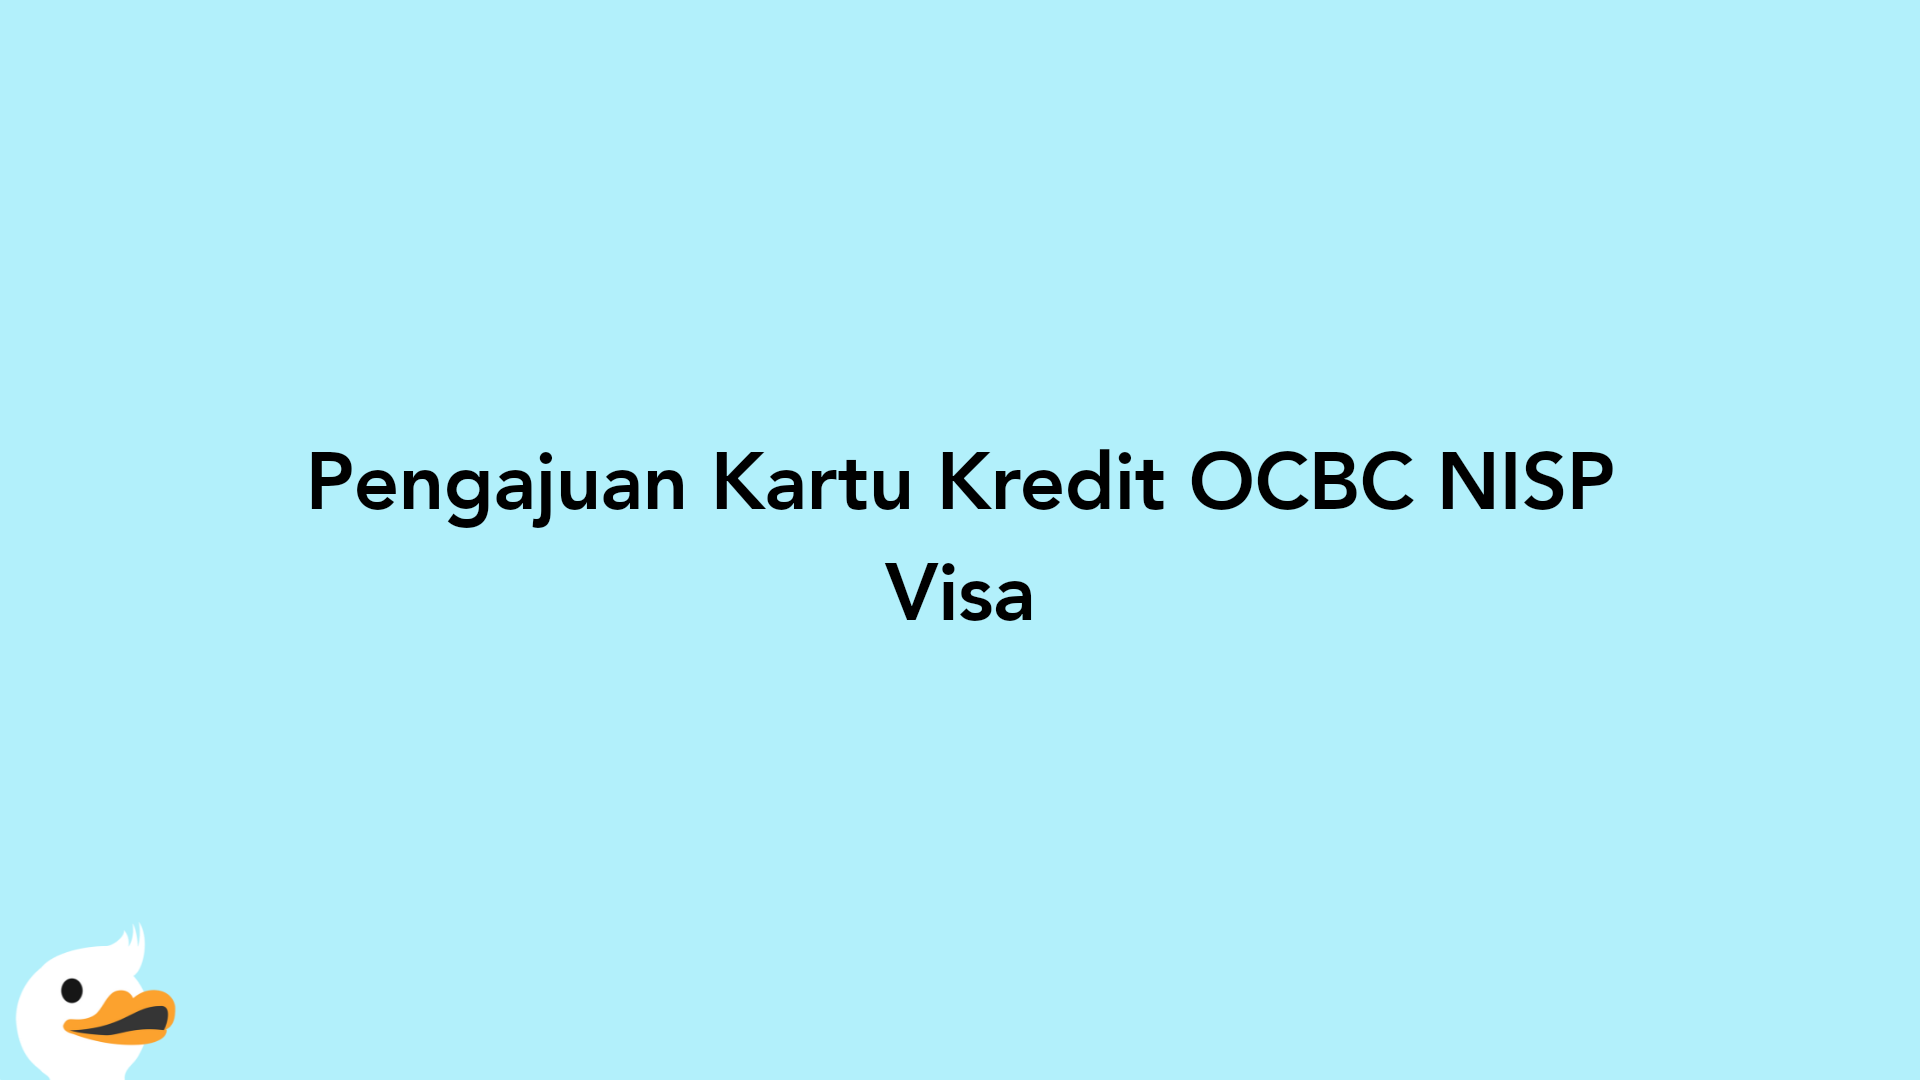 Pengajuan Kartu Kredit OCBC NISP Visa